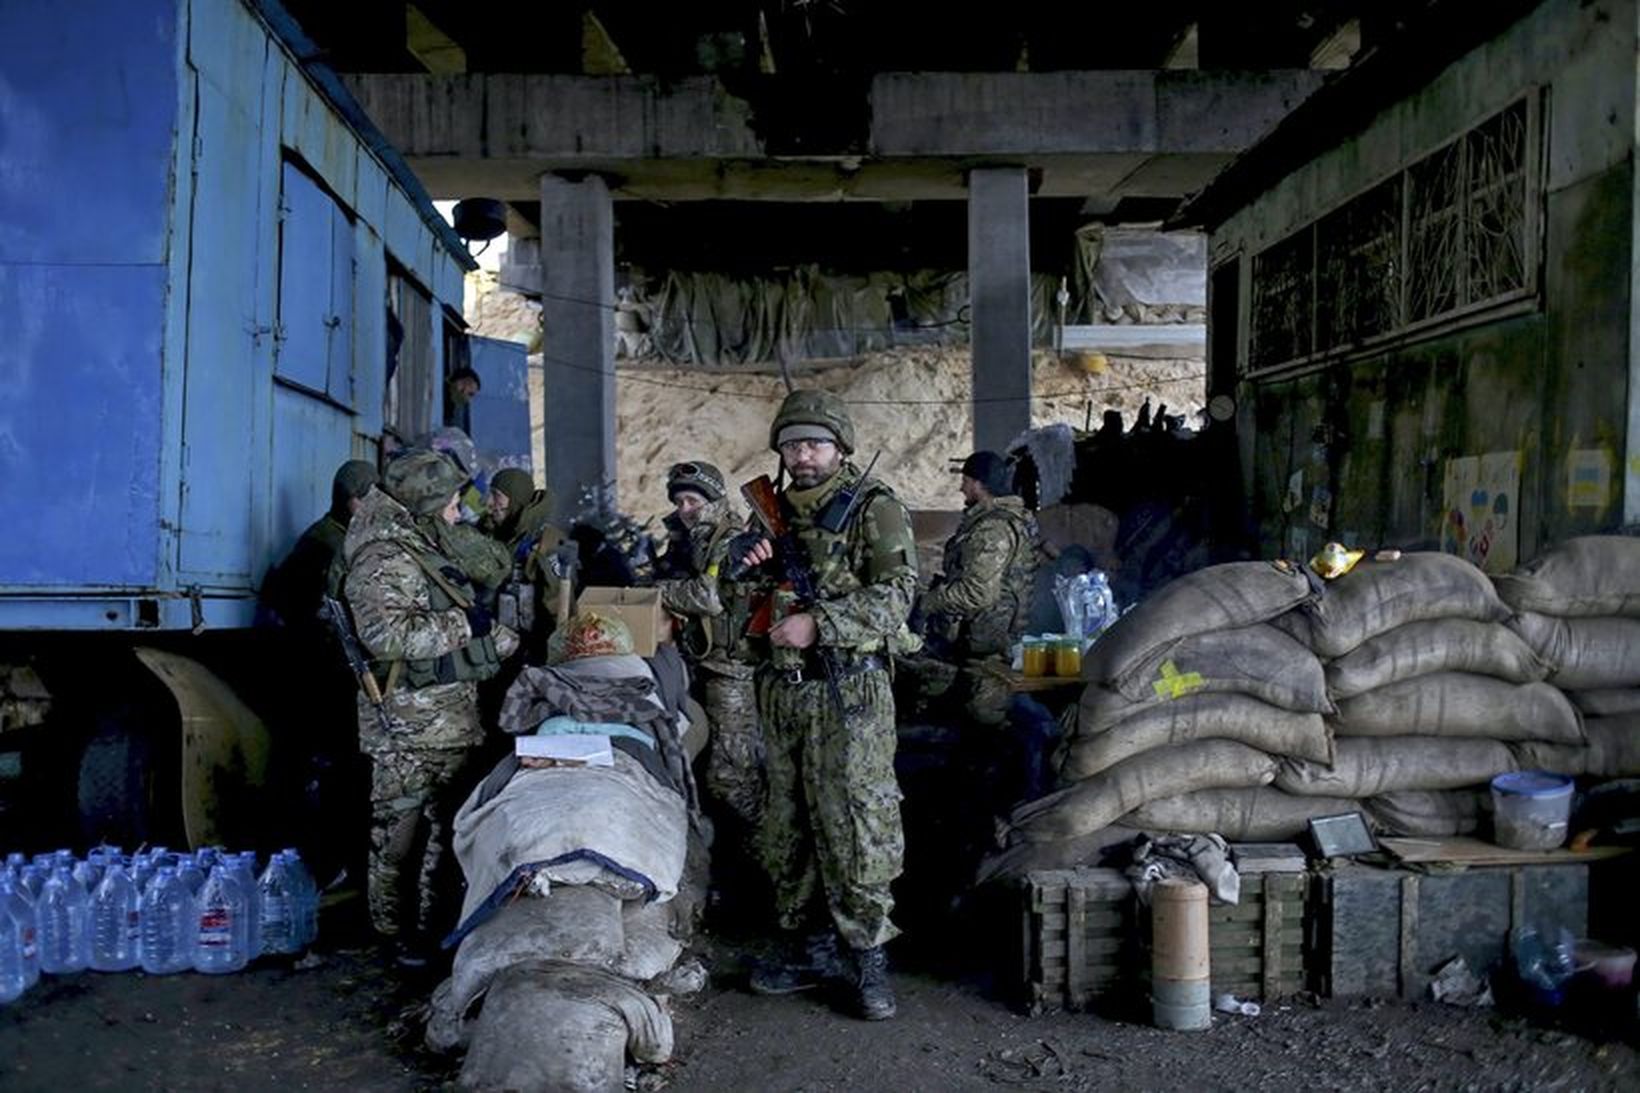 Úkraínskir hermenn undir brú í Donetsk.